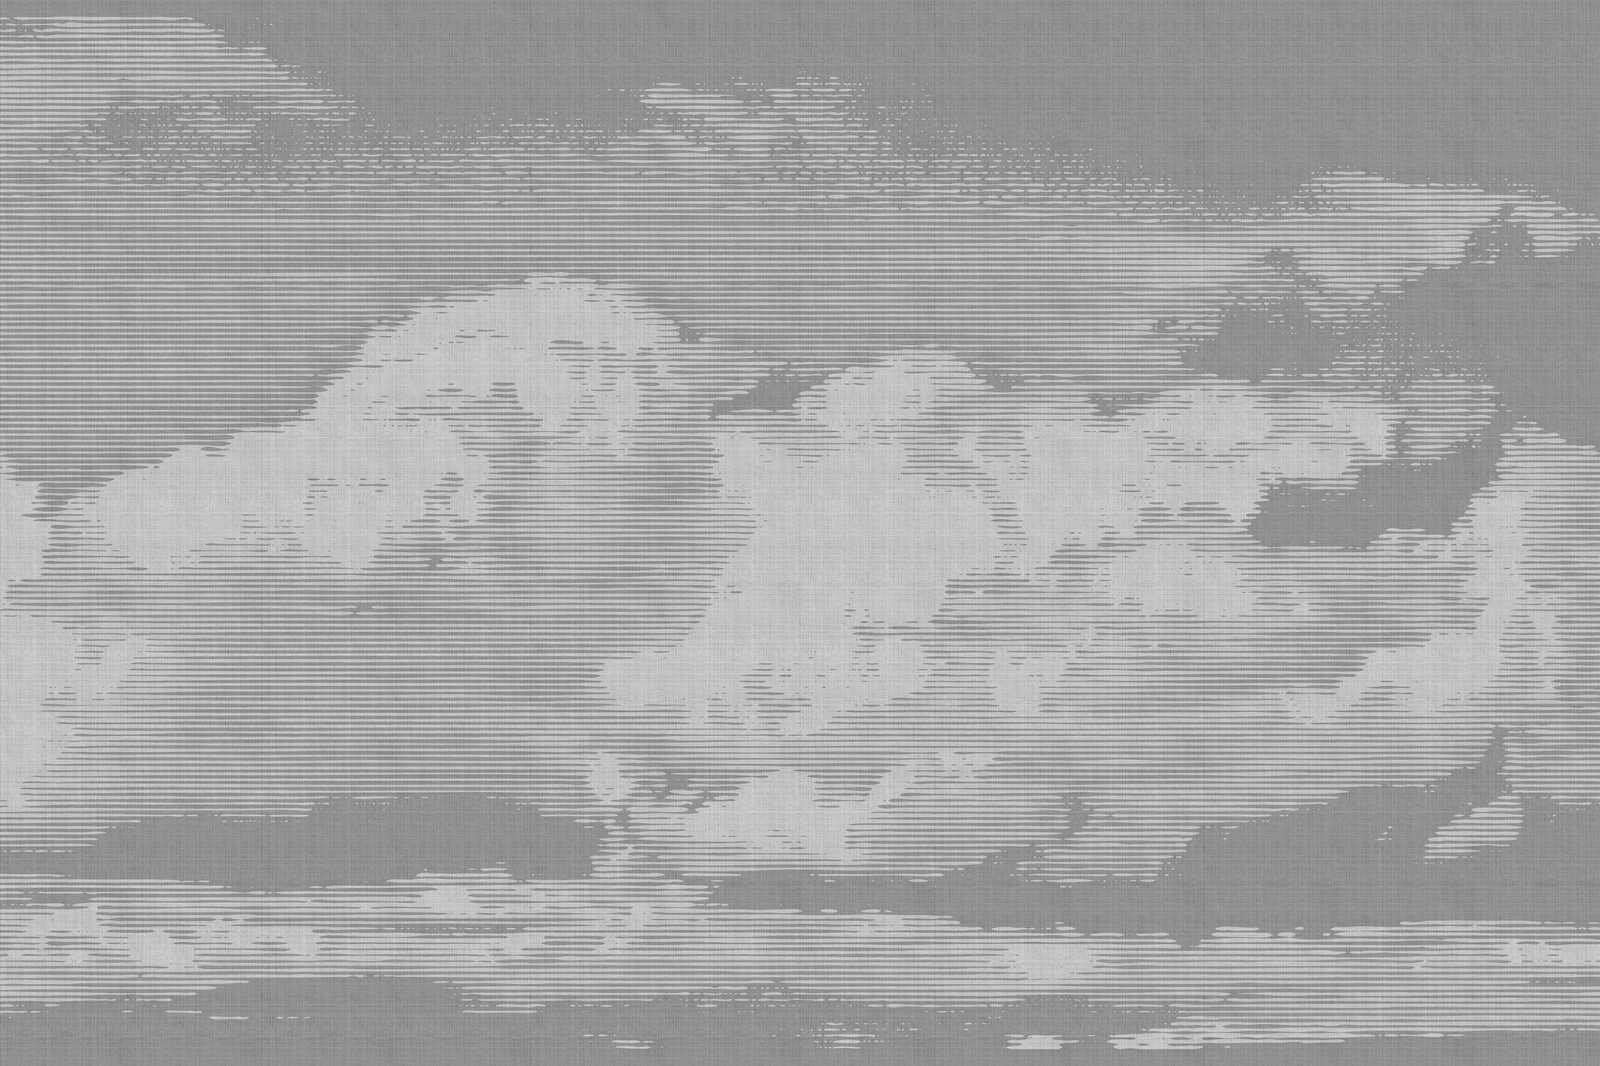             Clouds 2 - Hemels linnen doek met wolkenmotief - 0.90 m x 0.60 m
        